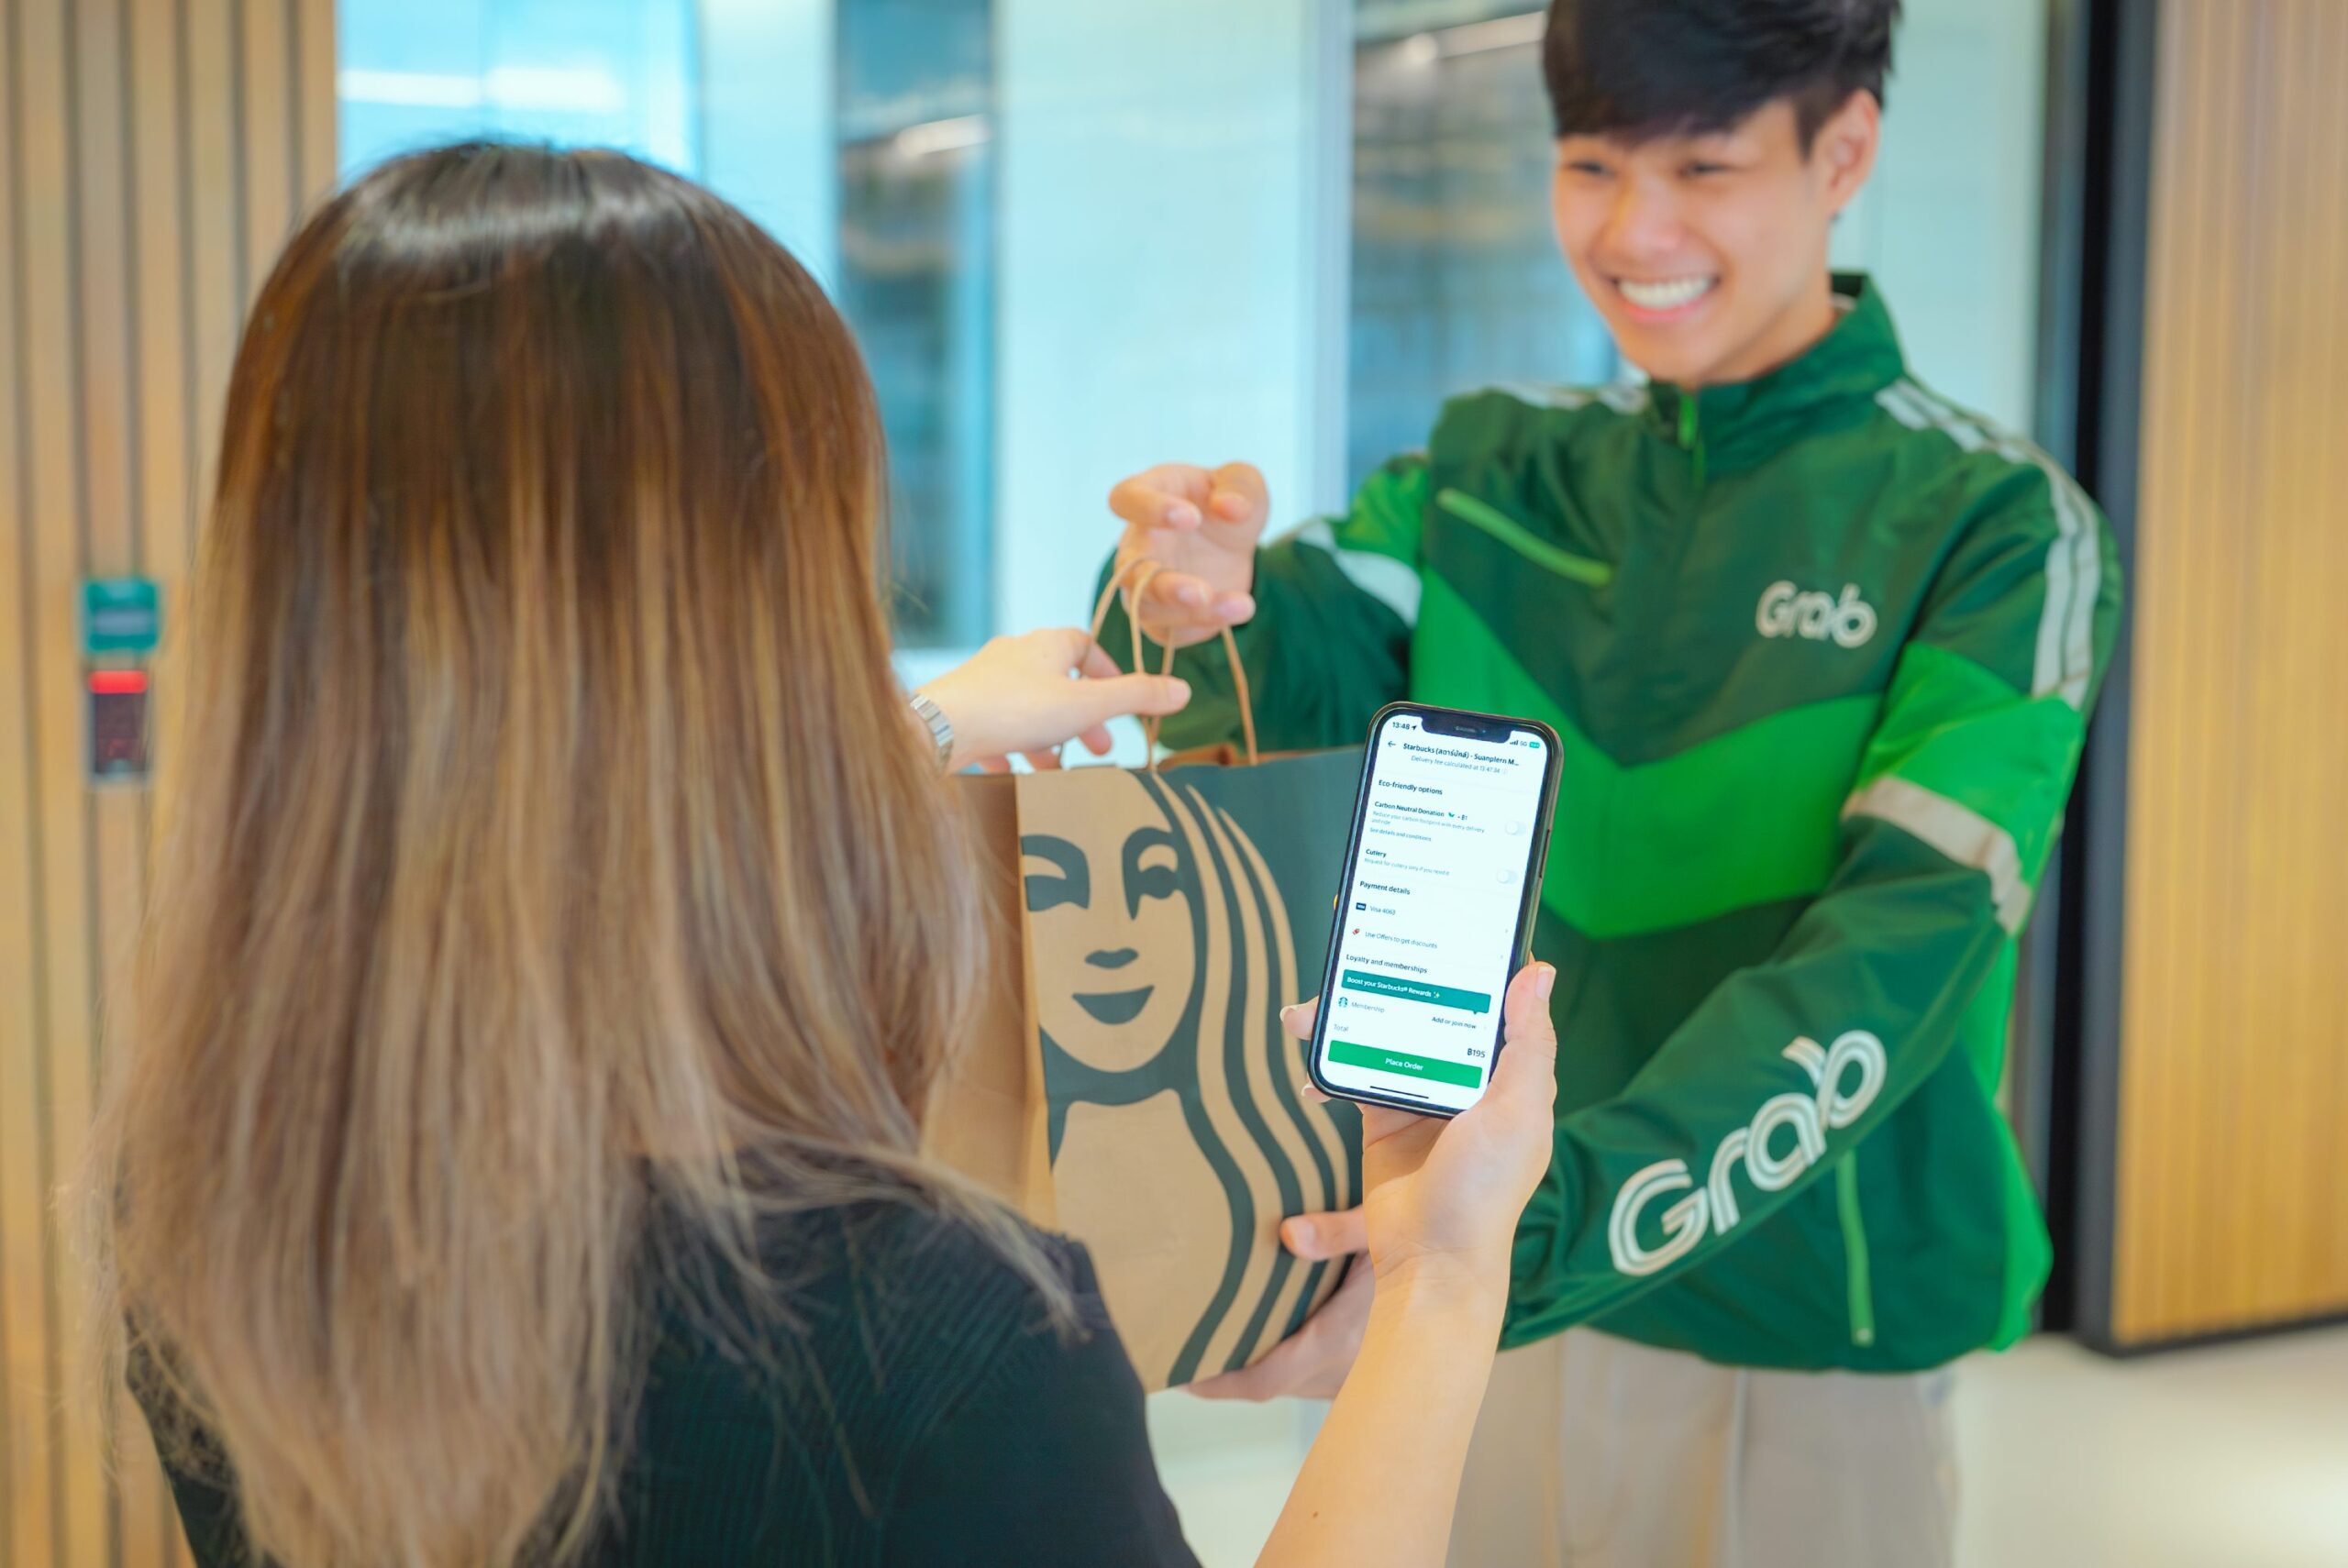 สตาร์บัคส์” ผนึกกำลัง “แกร็บ” Starbucks® Rewards สะสมดาวได้ง่ายขึ้นผ่านแอปพลิเคชันแกร็บ